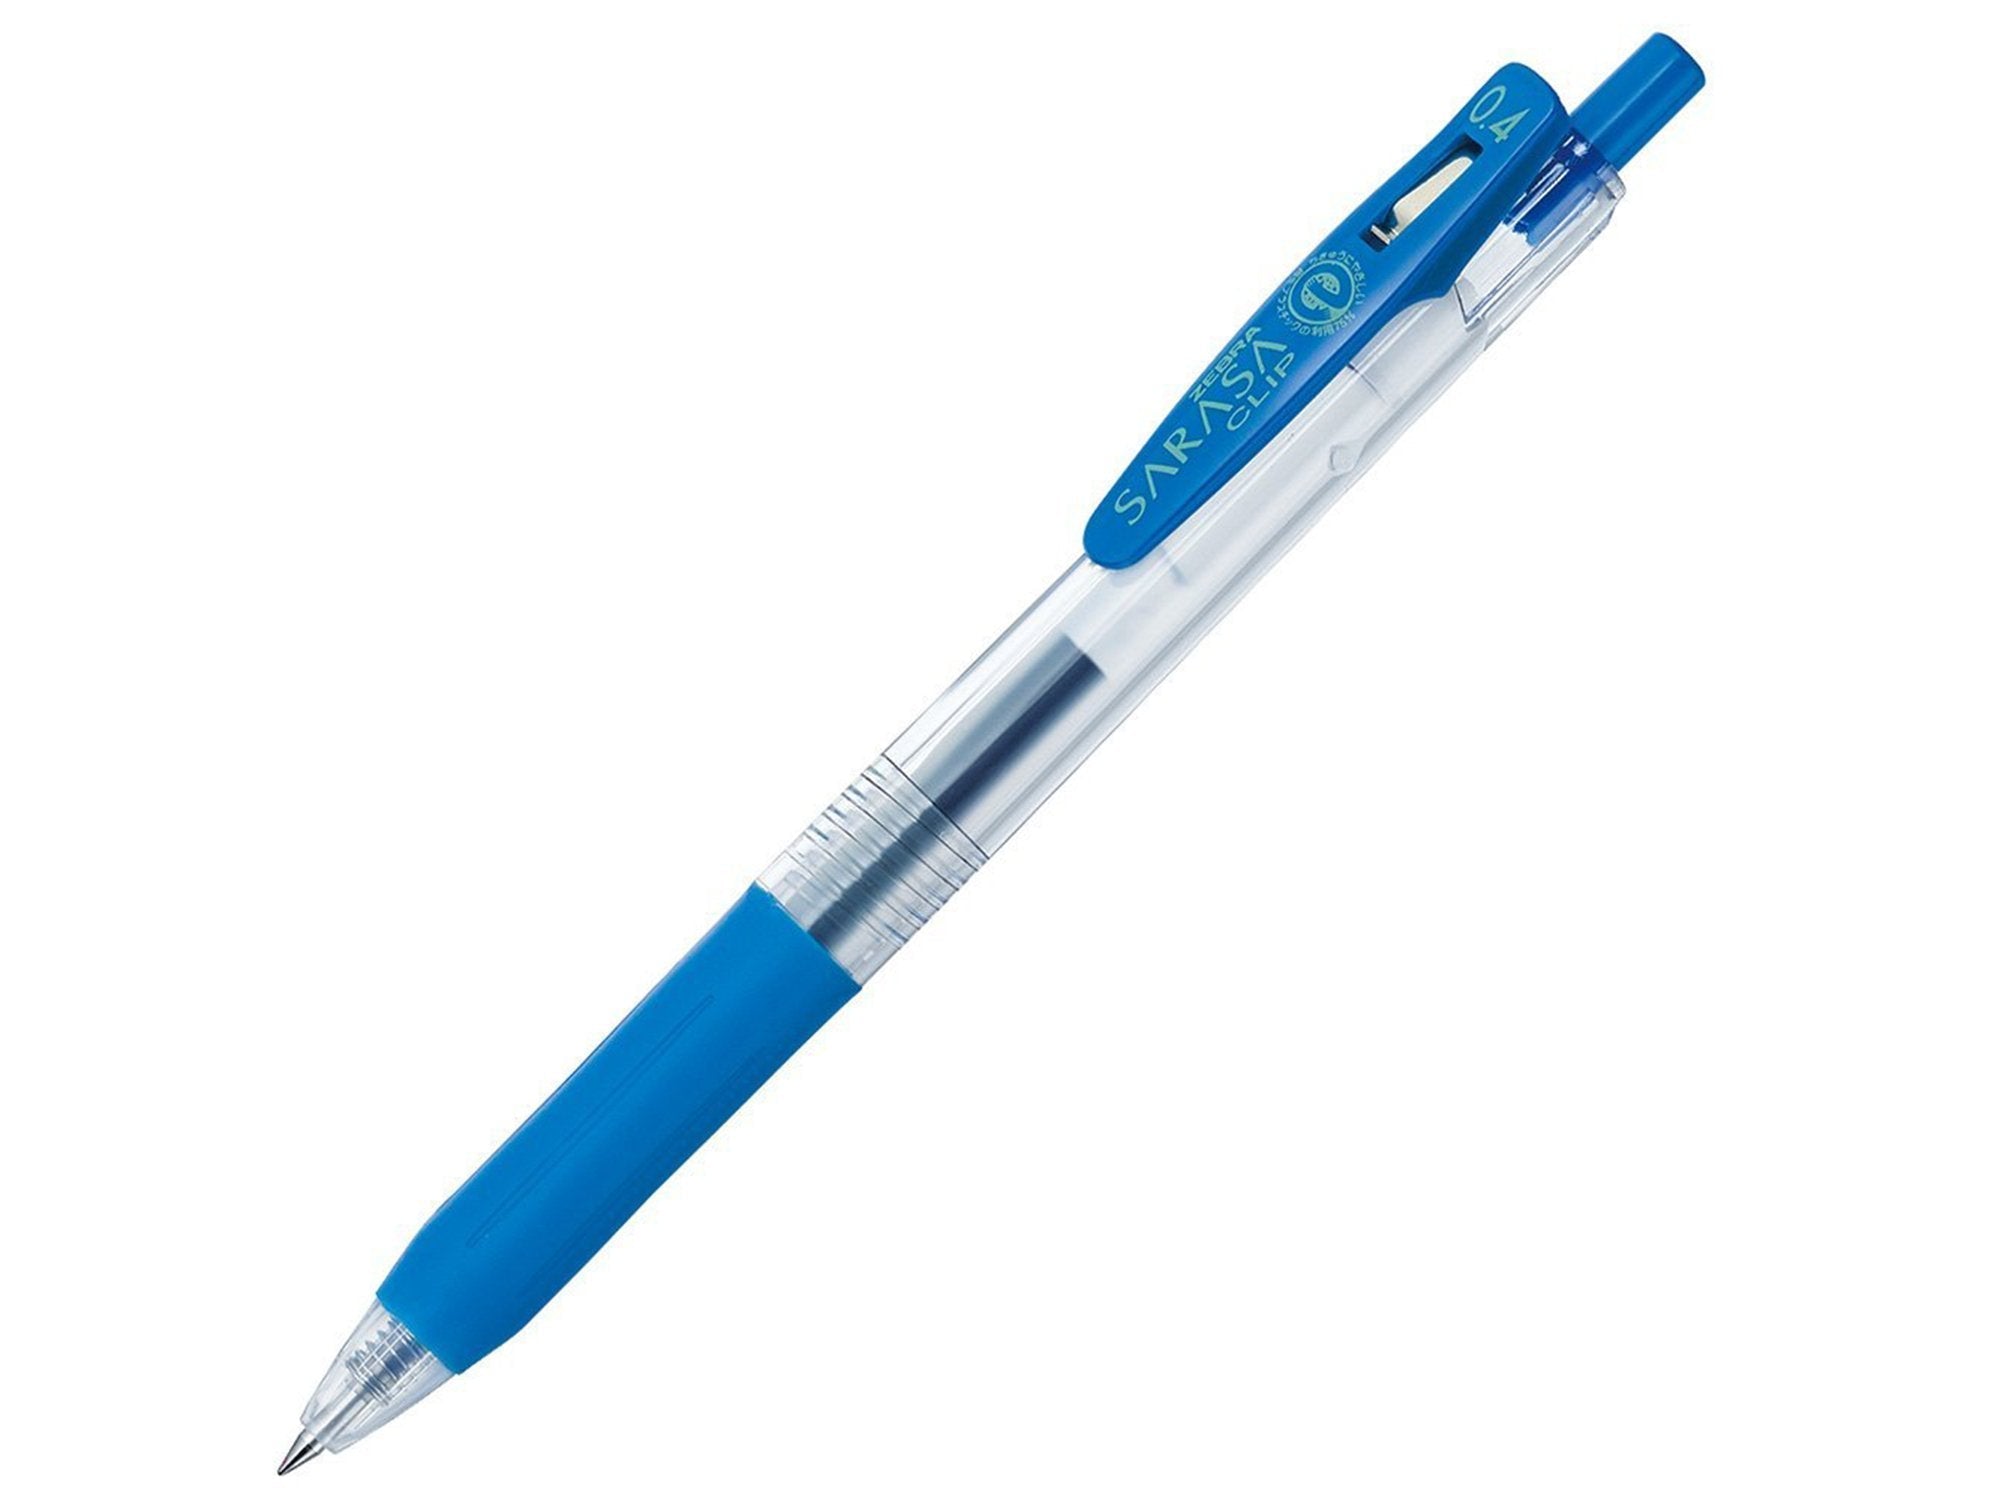 Zebra Mildliner Creative Pen Set